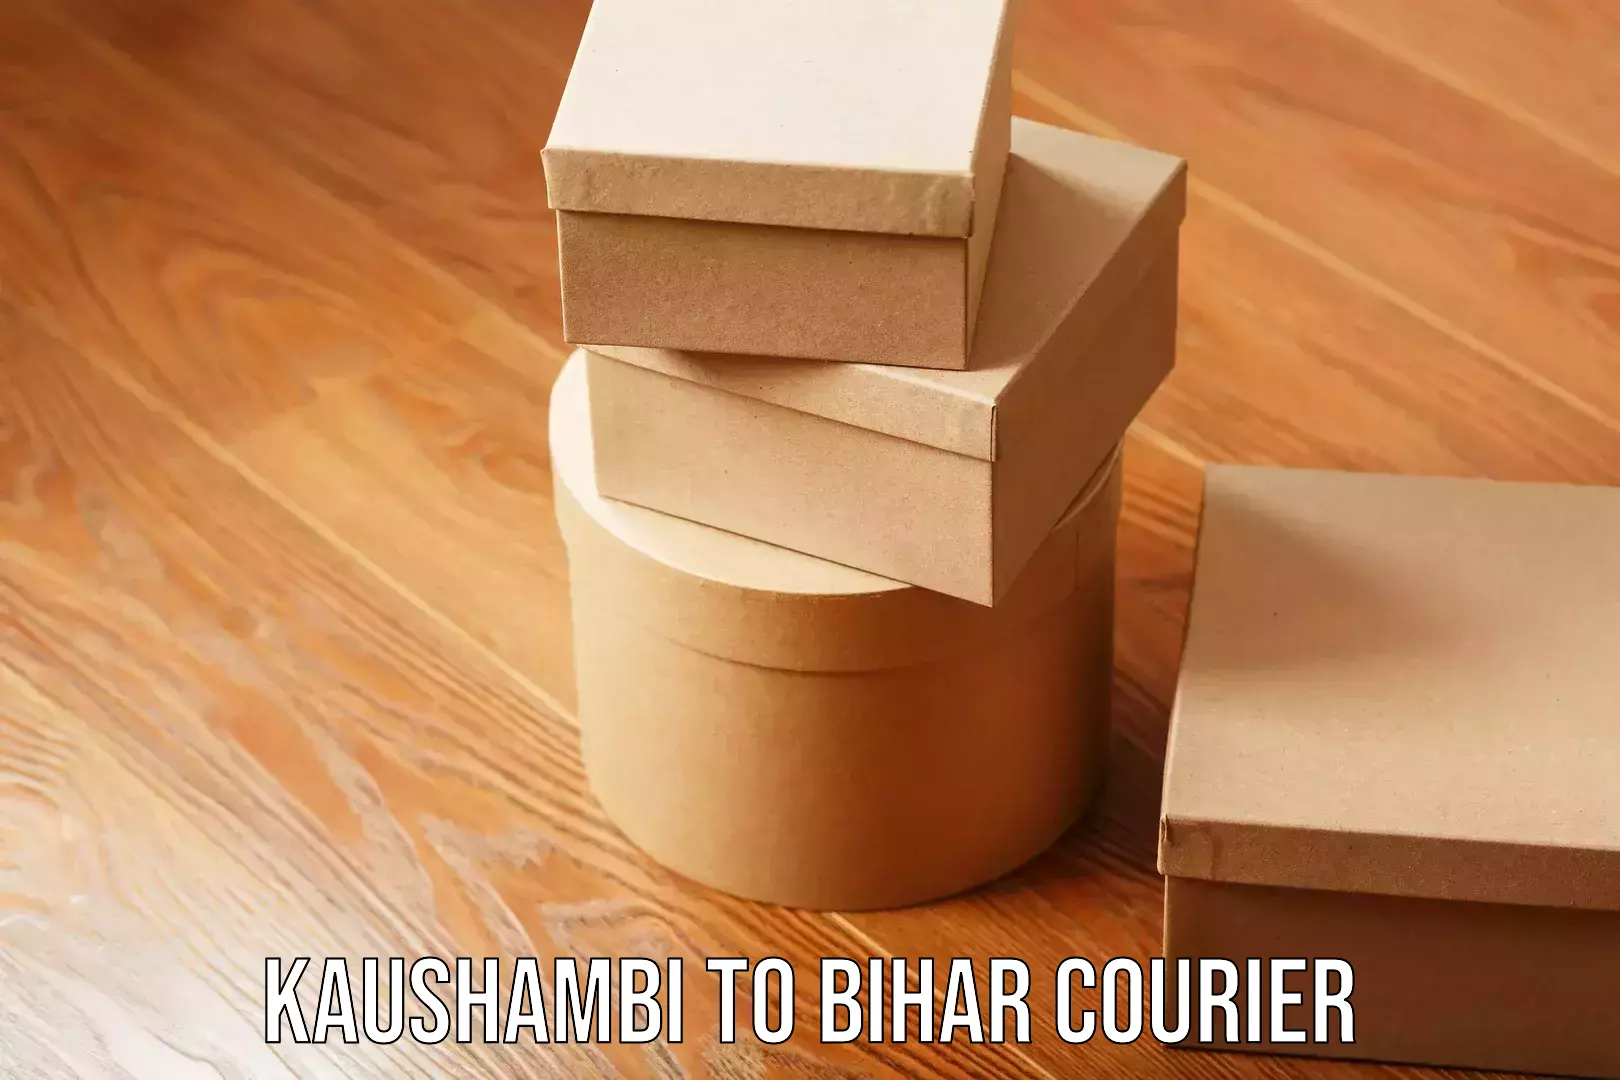 Home moving experts Kaushambi to Bihar